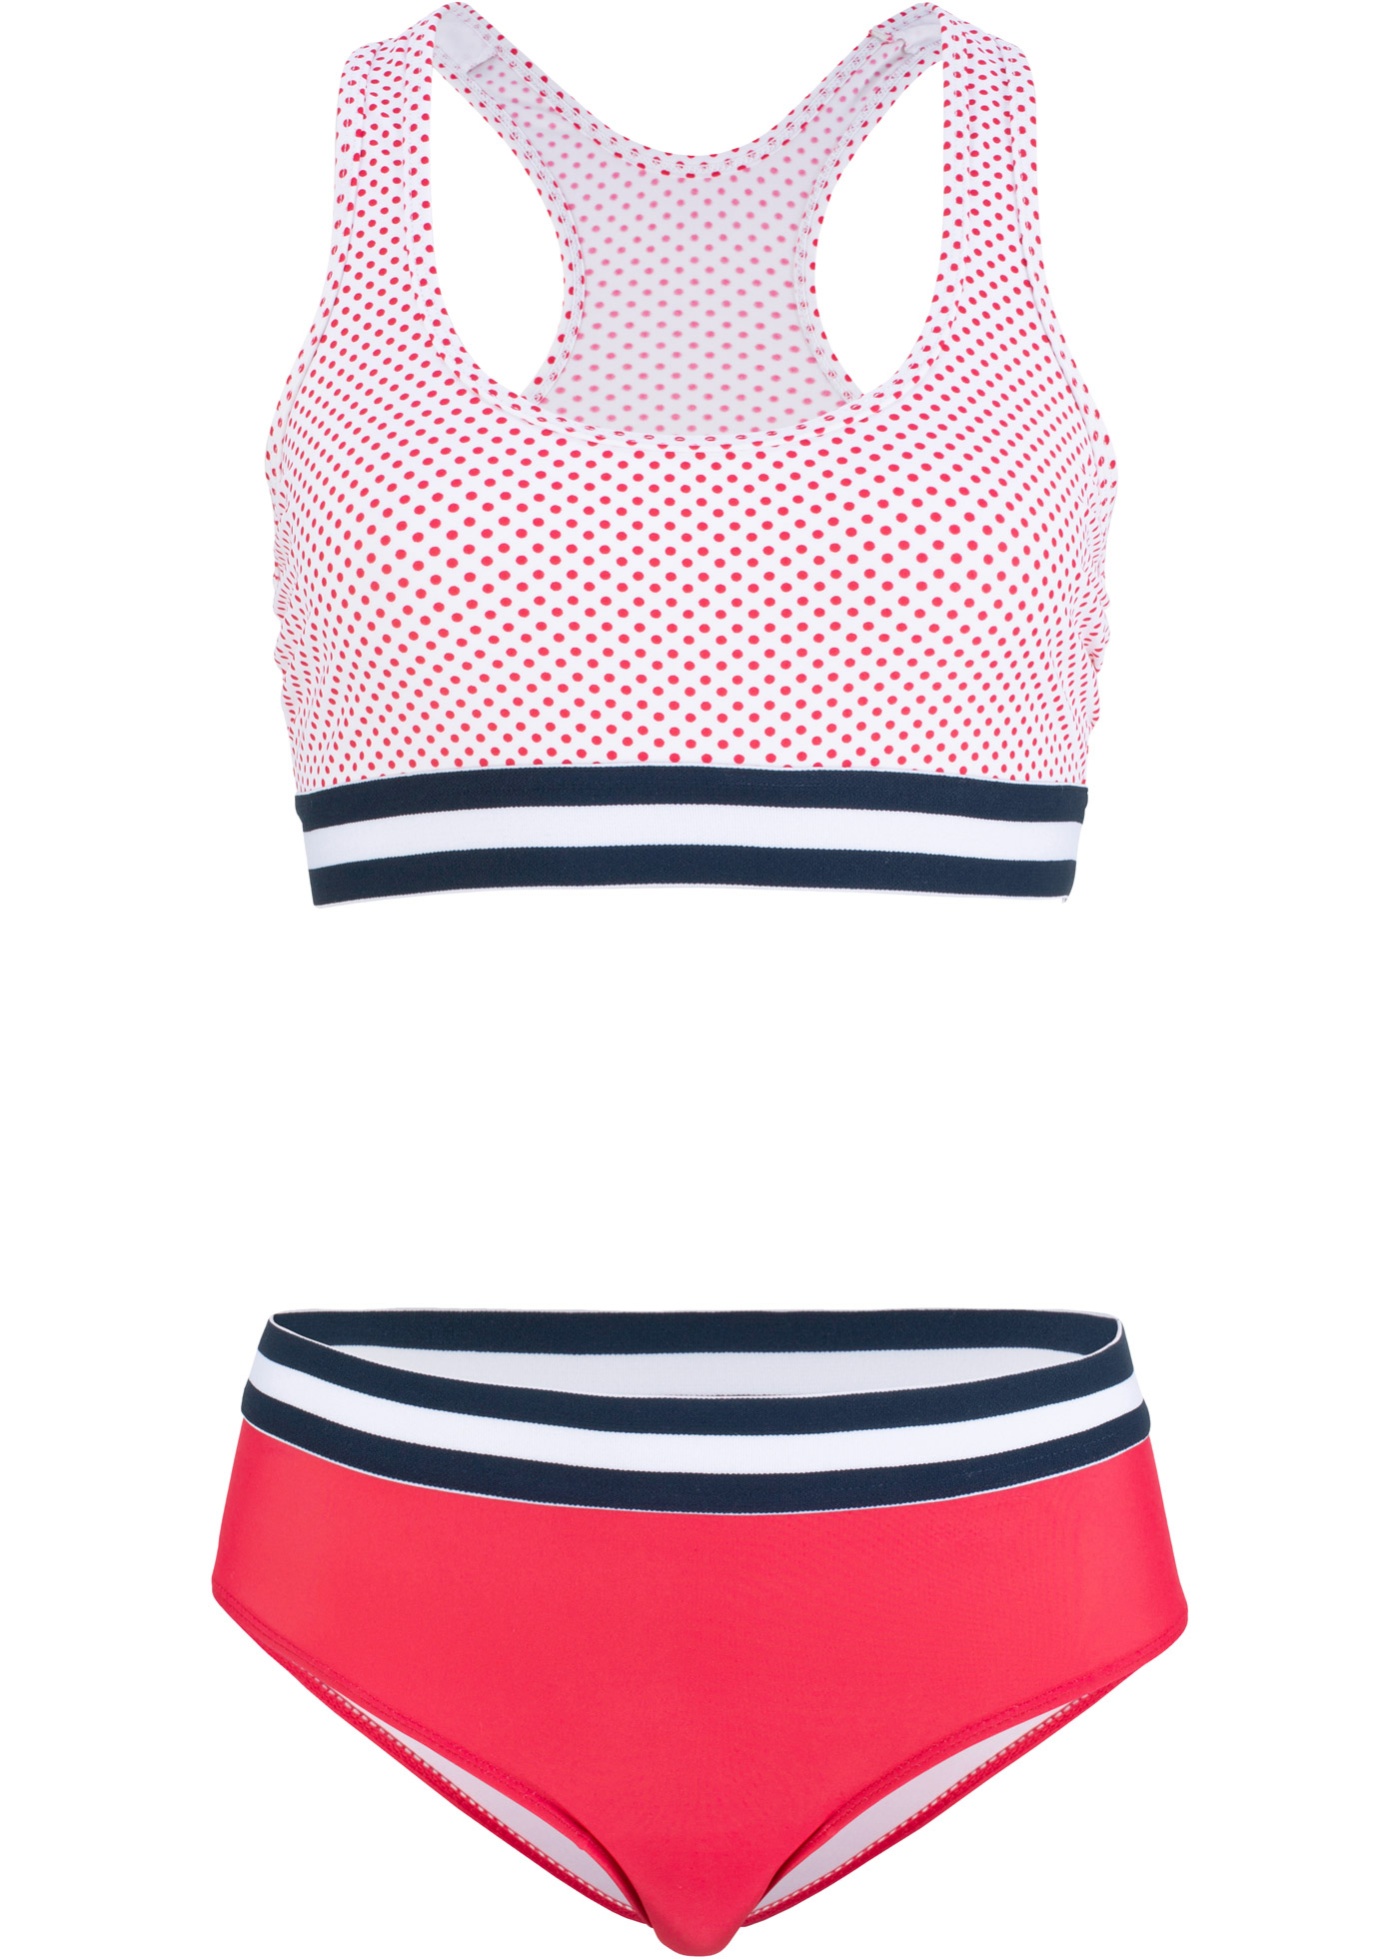 Komfortabler Bustier Bikini mit Ringerrücken und breiten Gummibündchen (96648895) in rot/weiß